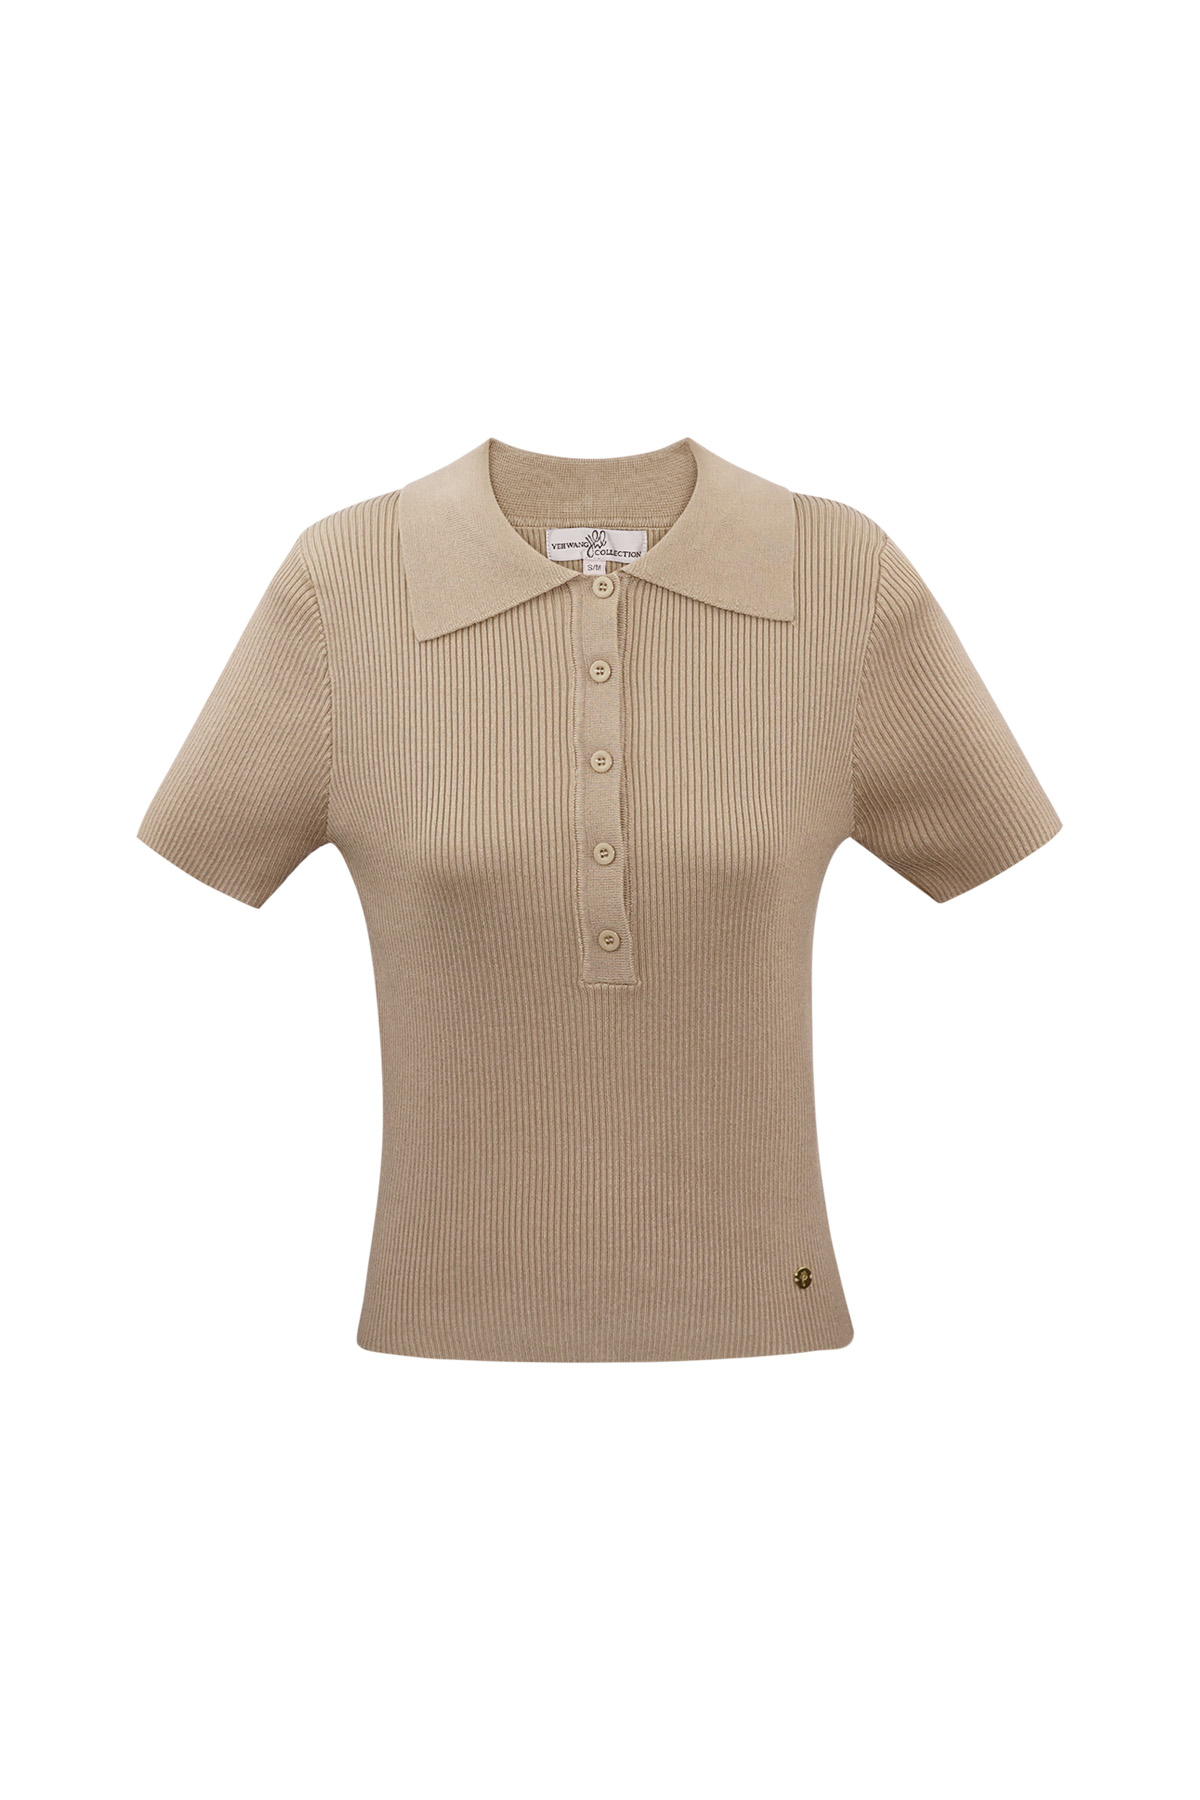 Basic-Poloshirt mit halber Knopfleiste, groß/extragroß – Beige h5 